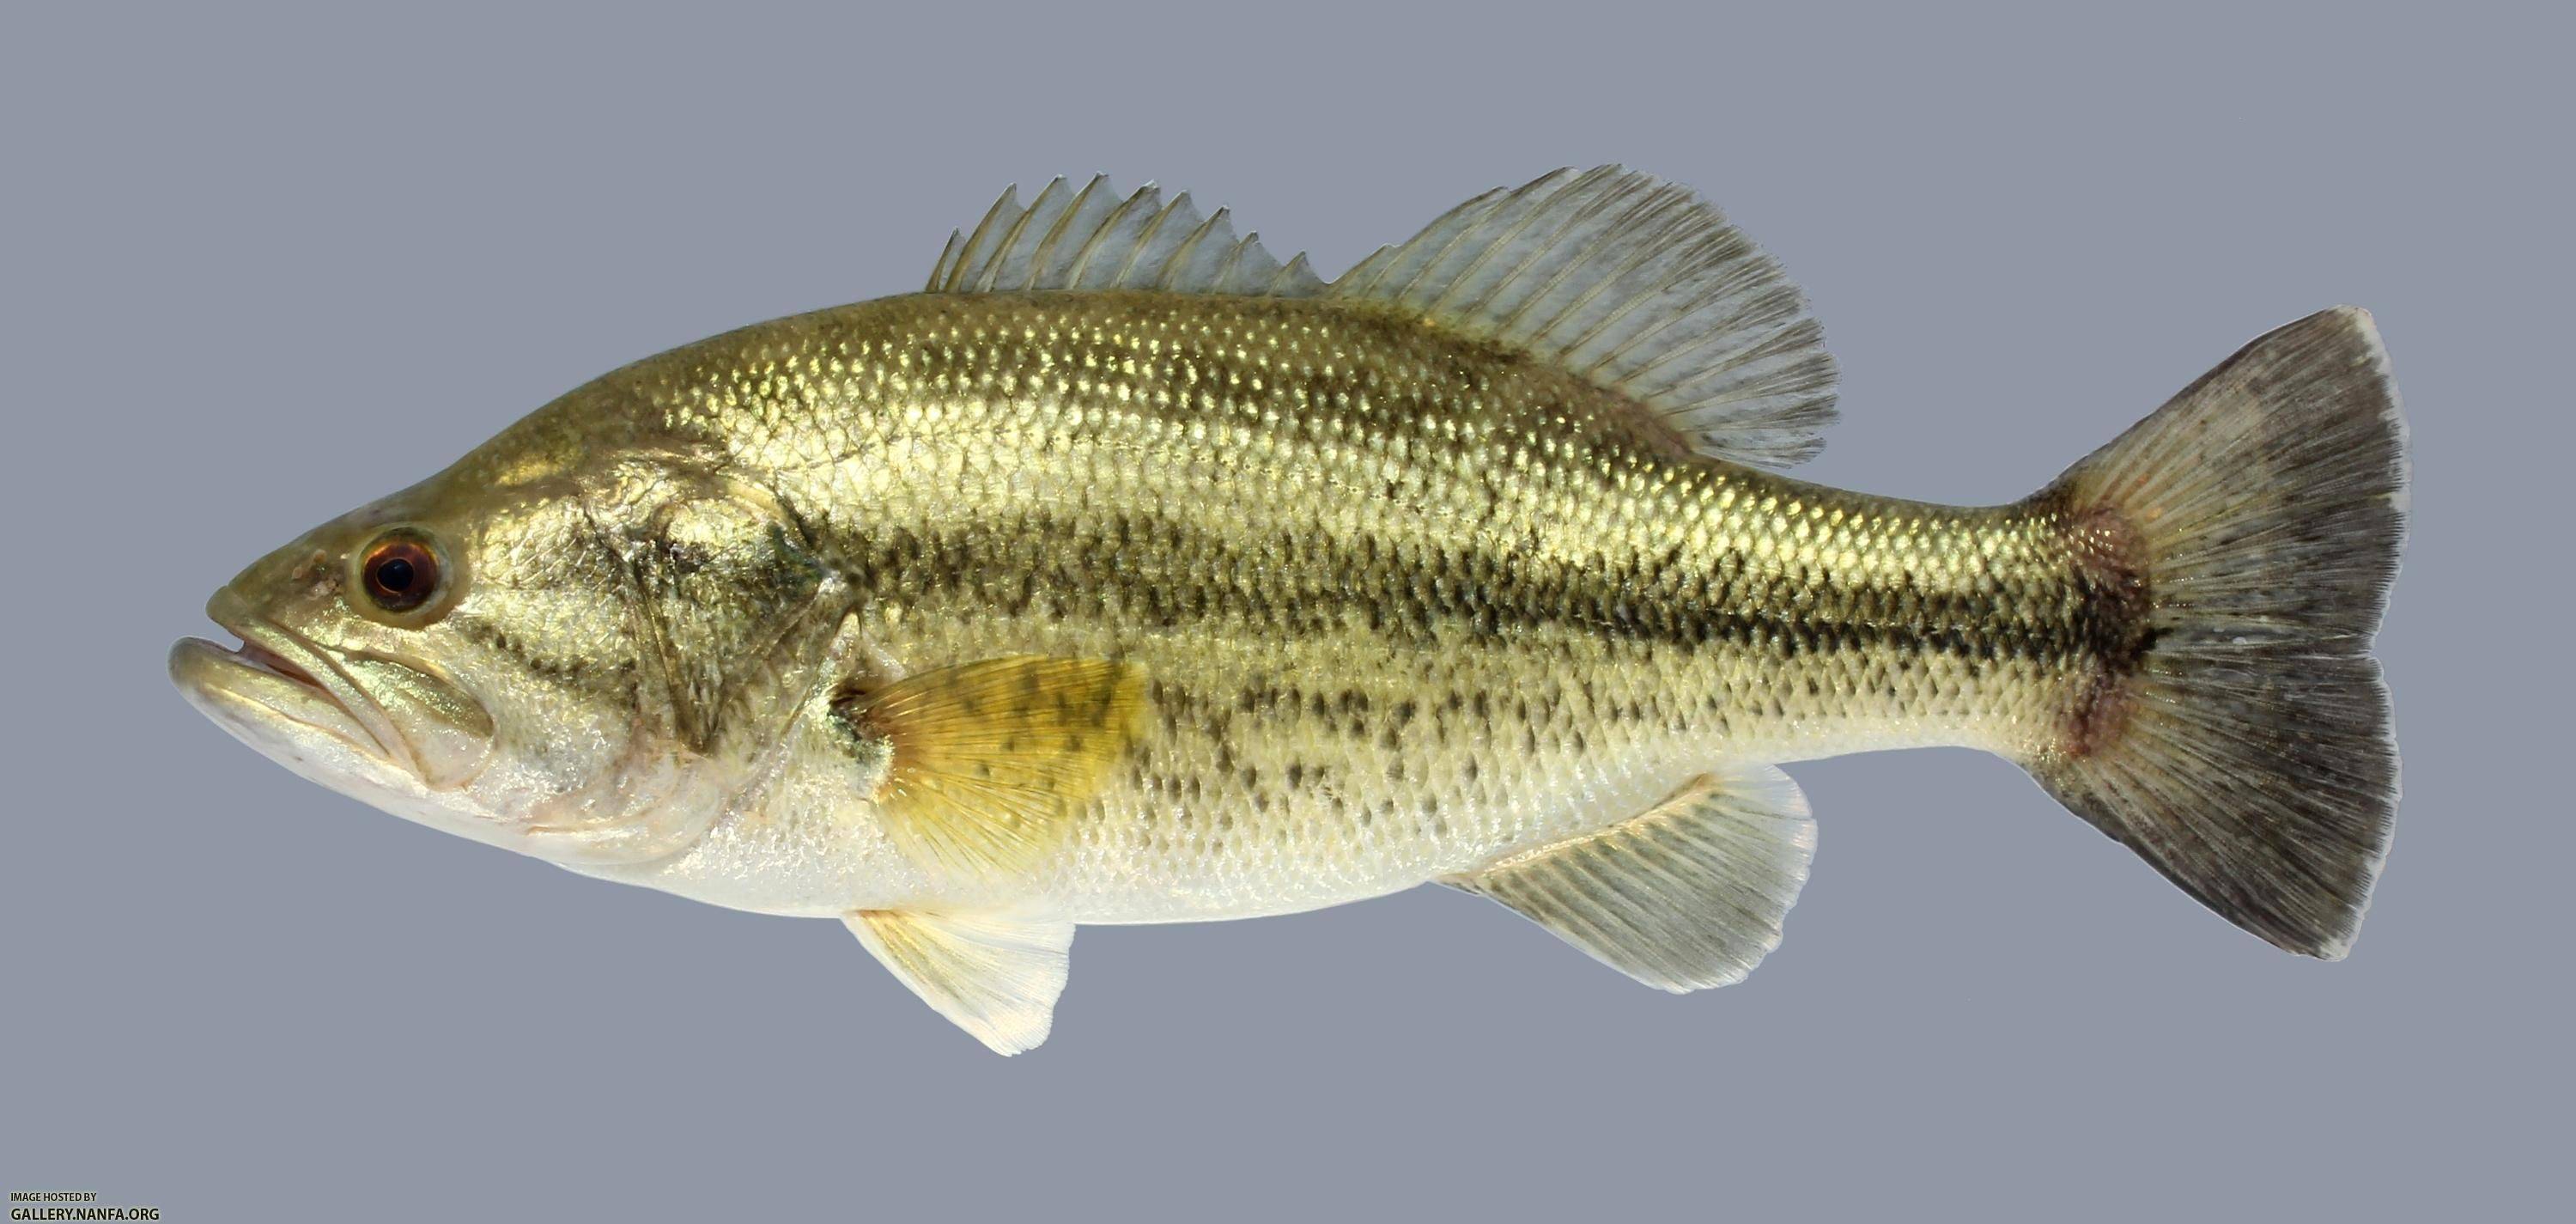 Басс большеротый фото и описание – каталог рыб, смотреть онлайн